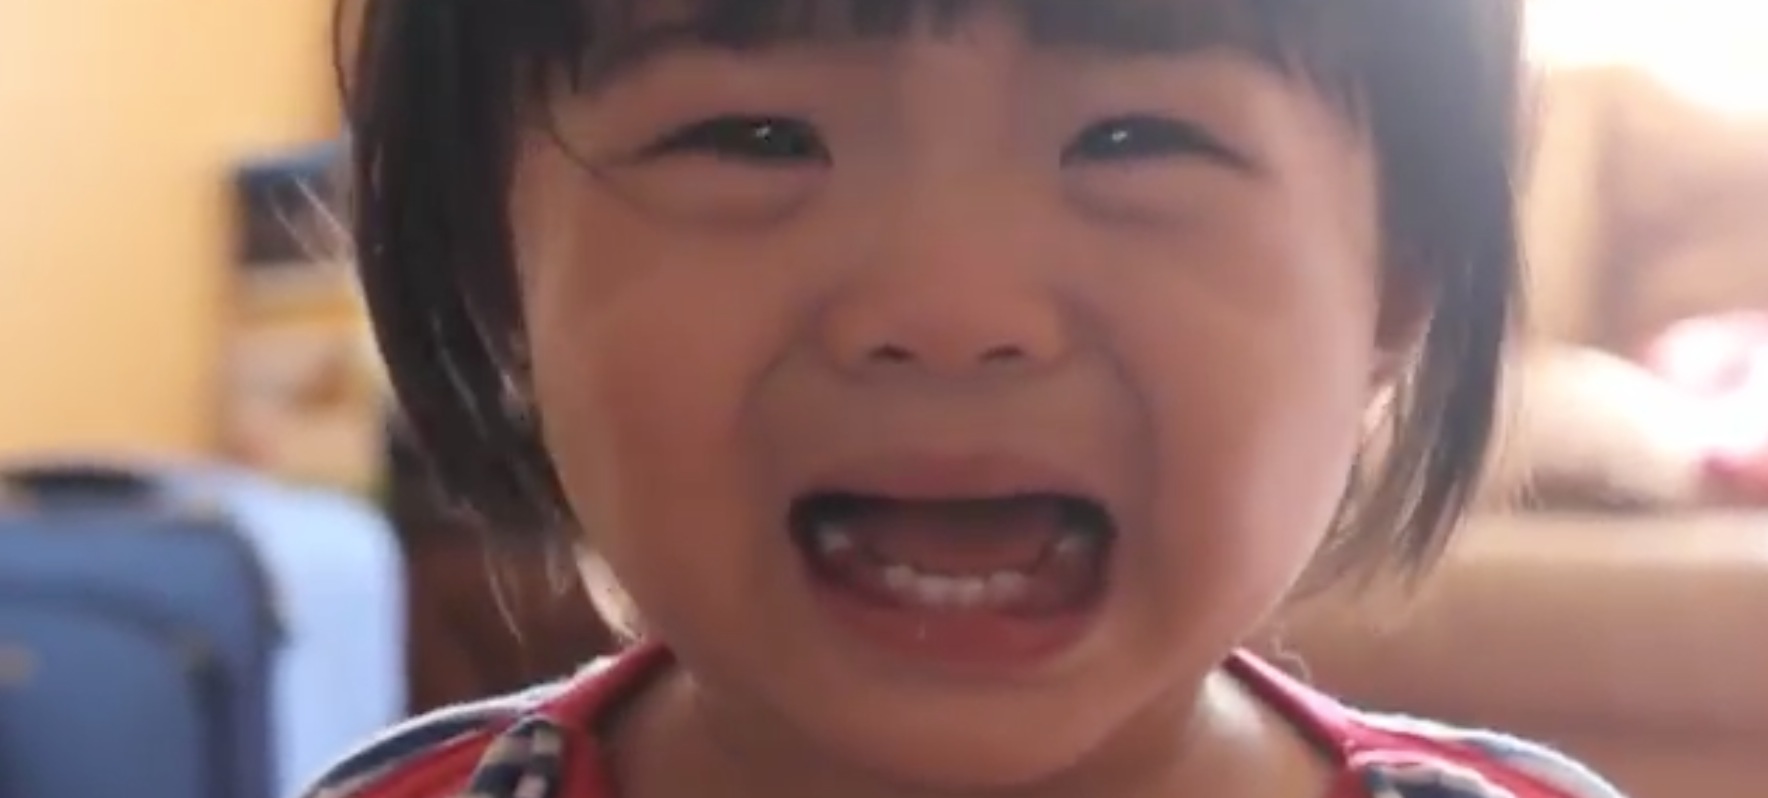 Comment stppoer un enfant de pleurer